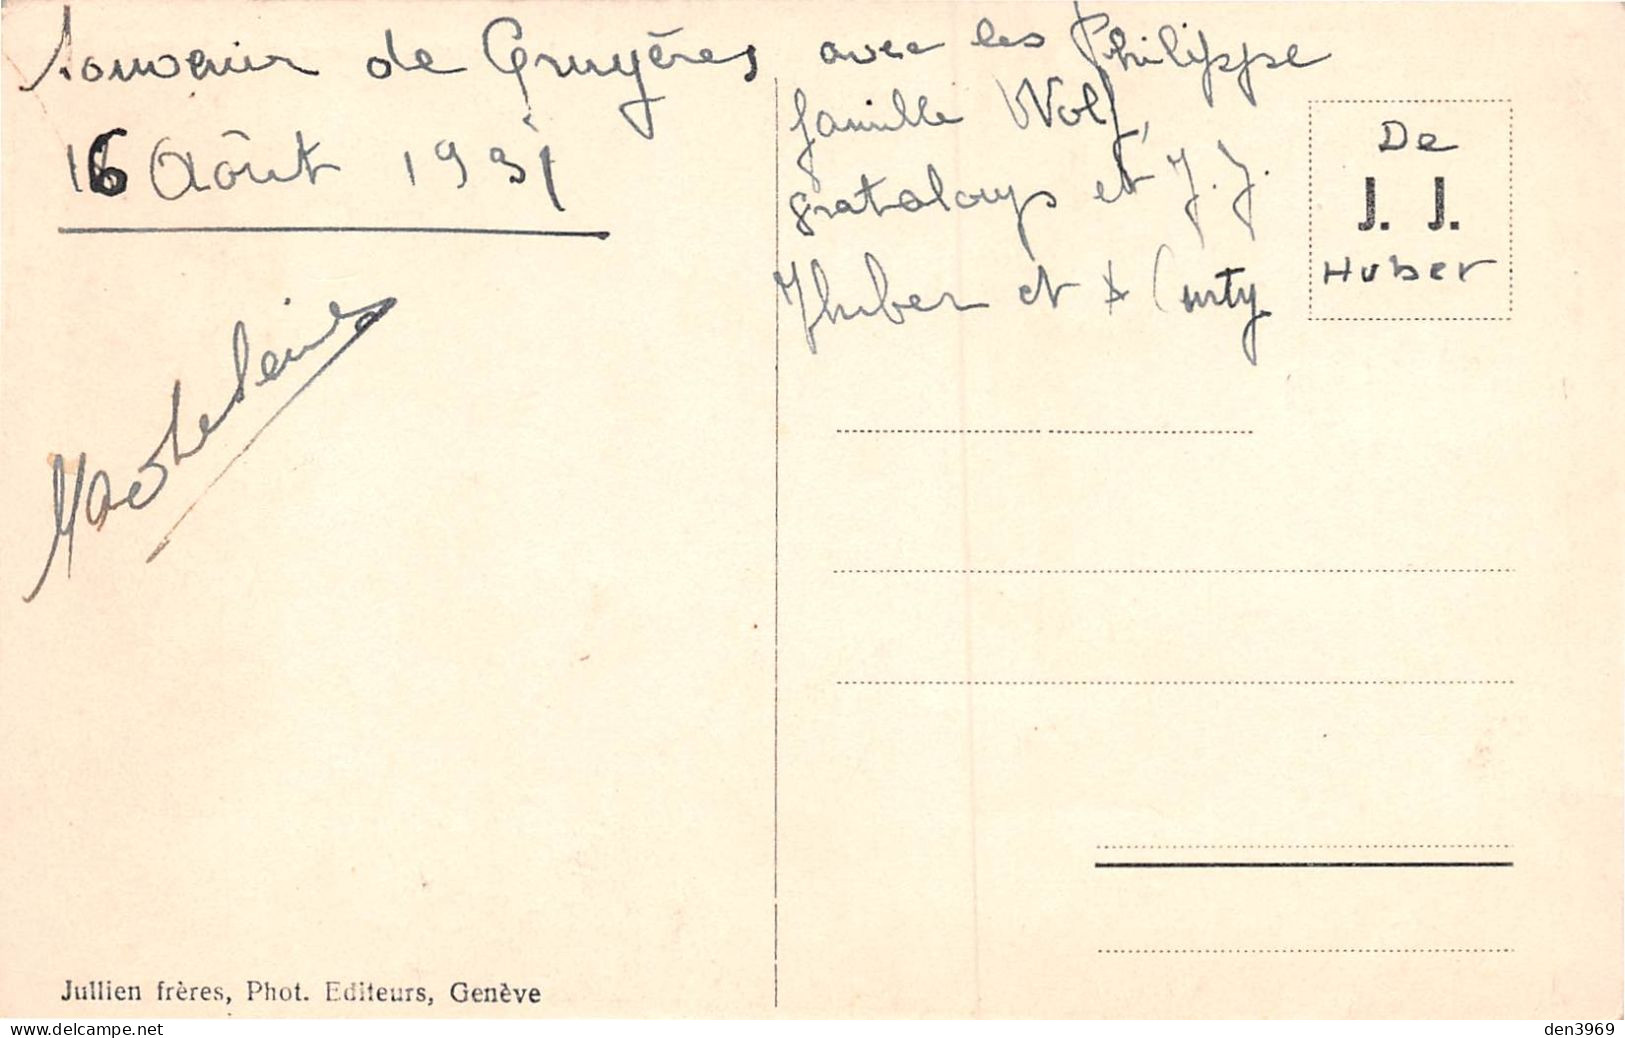 Suisse - FR - GRUYERES Et La Dent De Broc - Fenaison Attelage De Cheval Transportant Du Foin - Ecrit 1931 (voir 2 Scans) - Broc